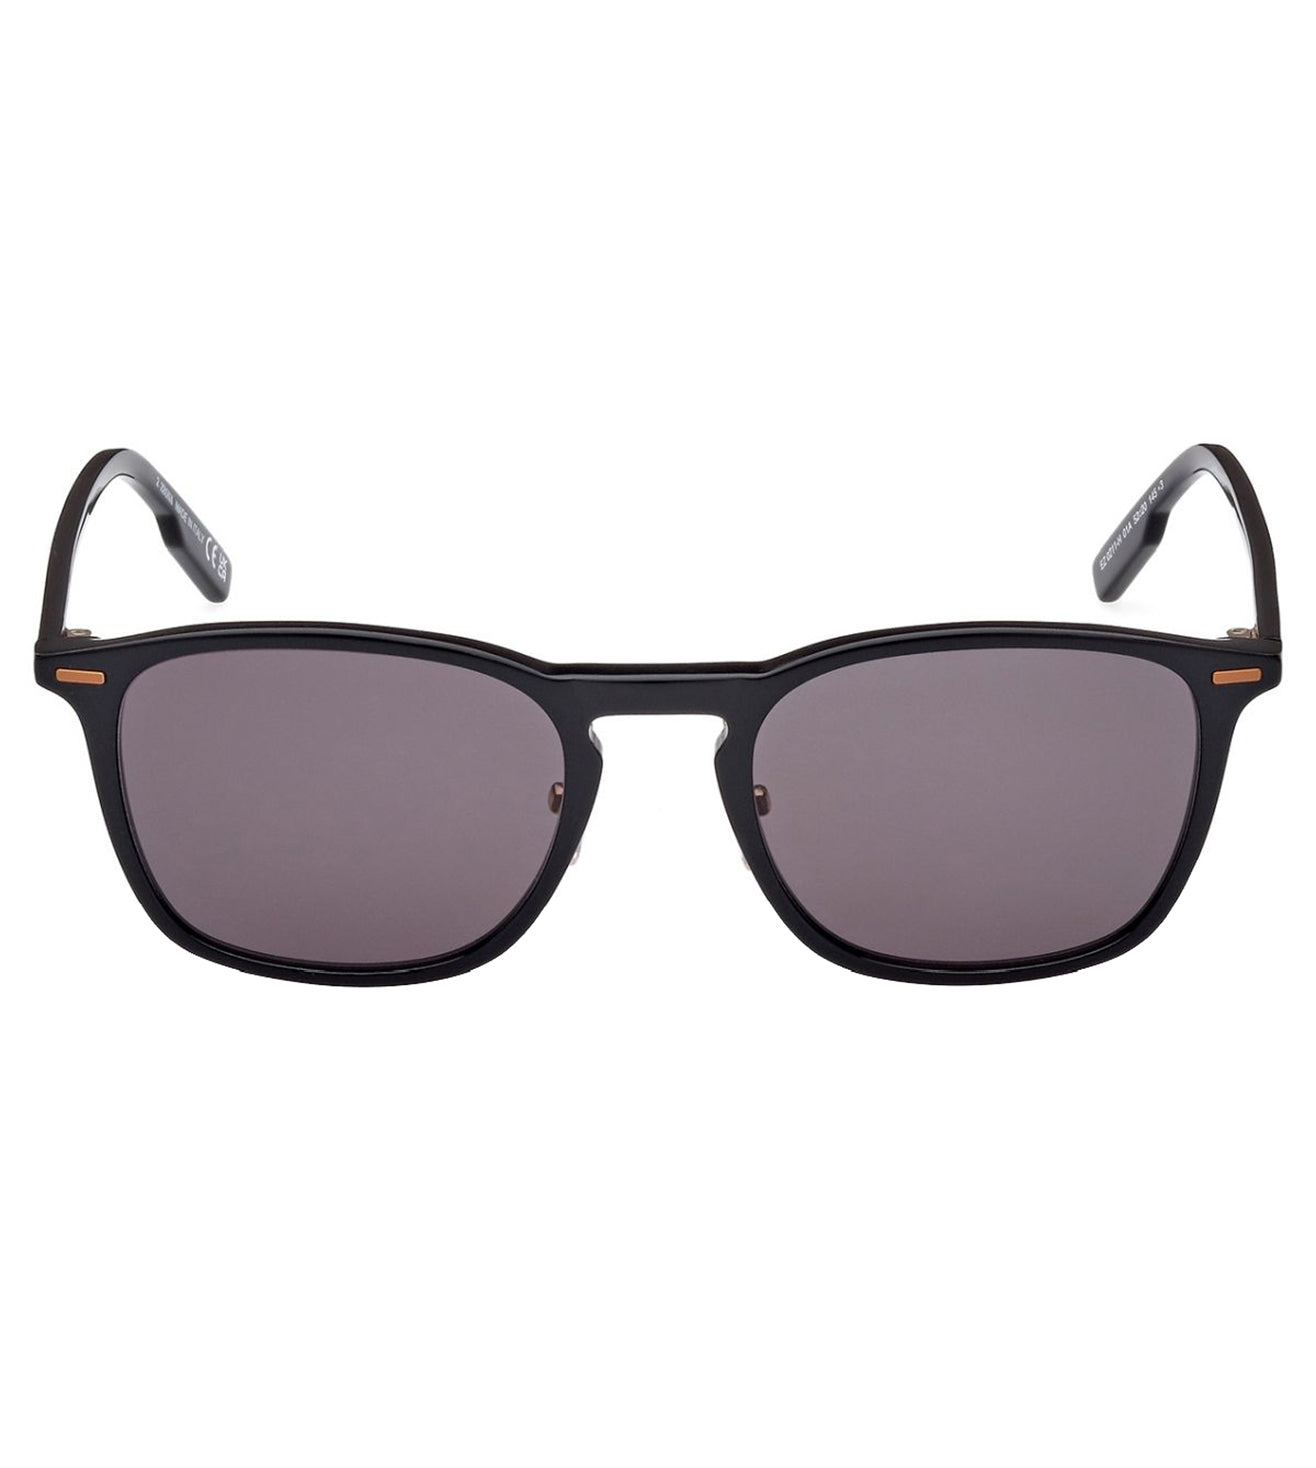 Zegna Men's Smoke Oval Sunglasses